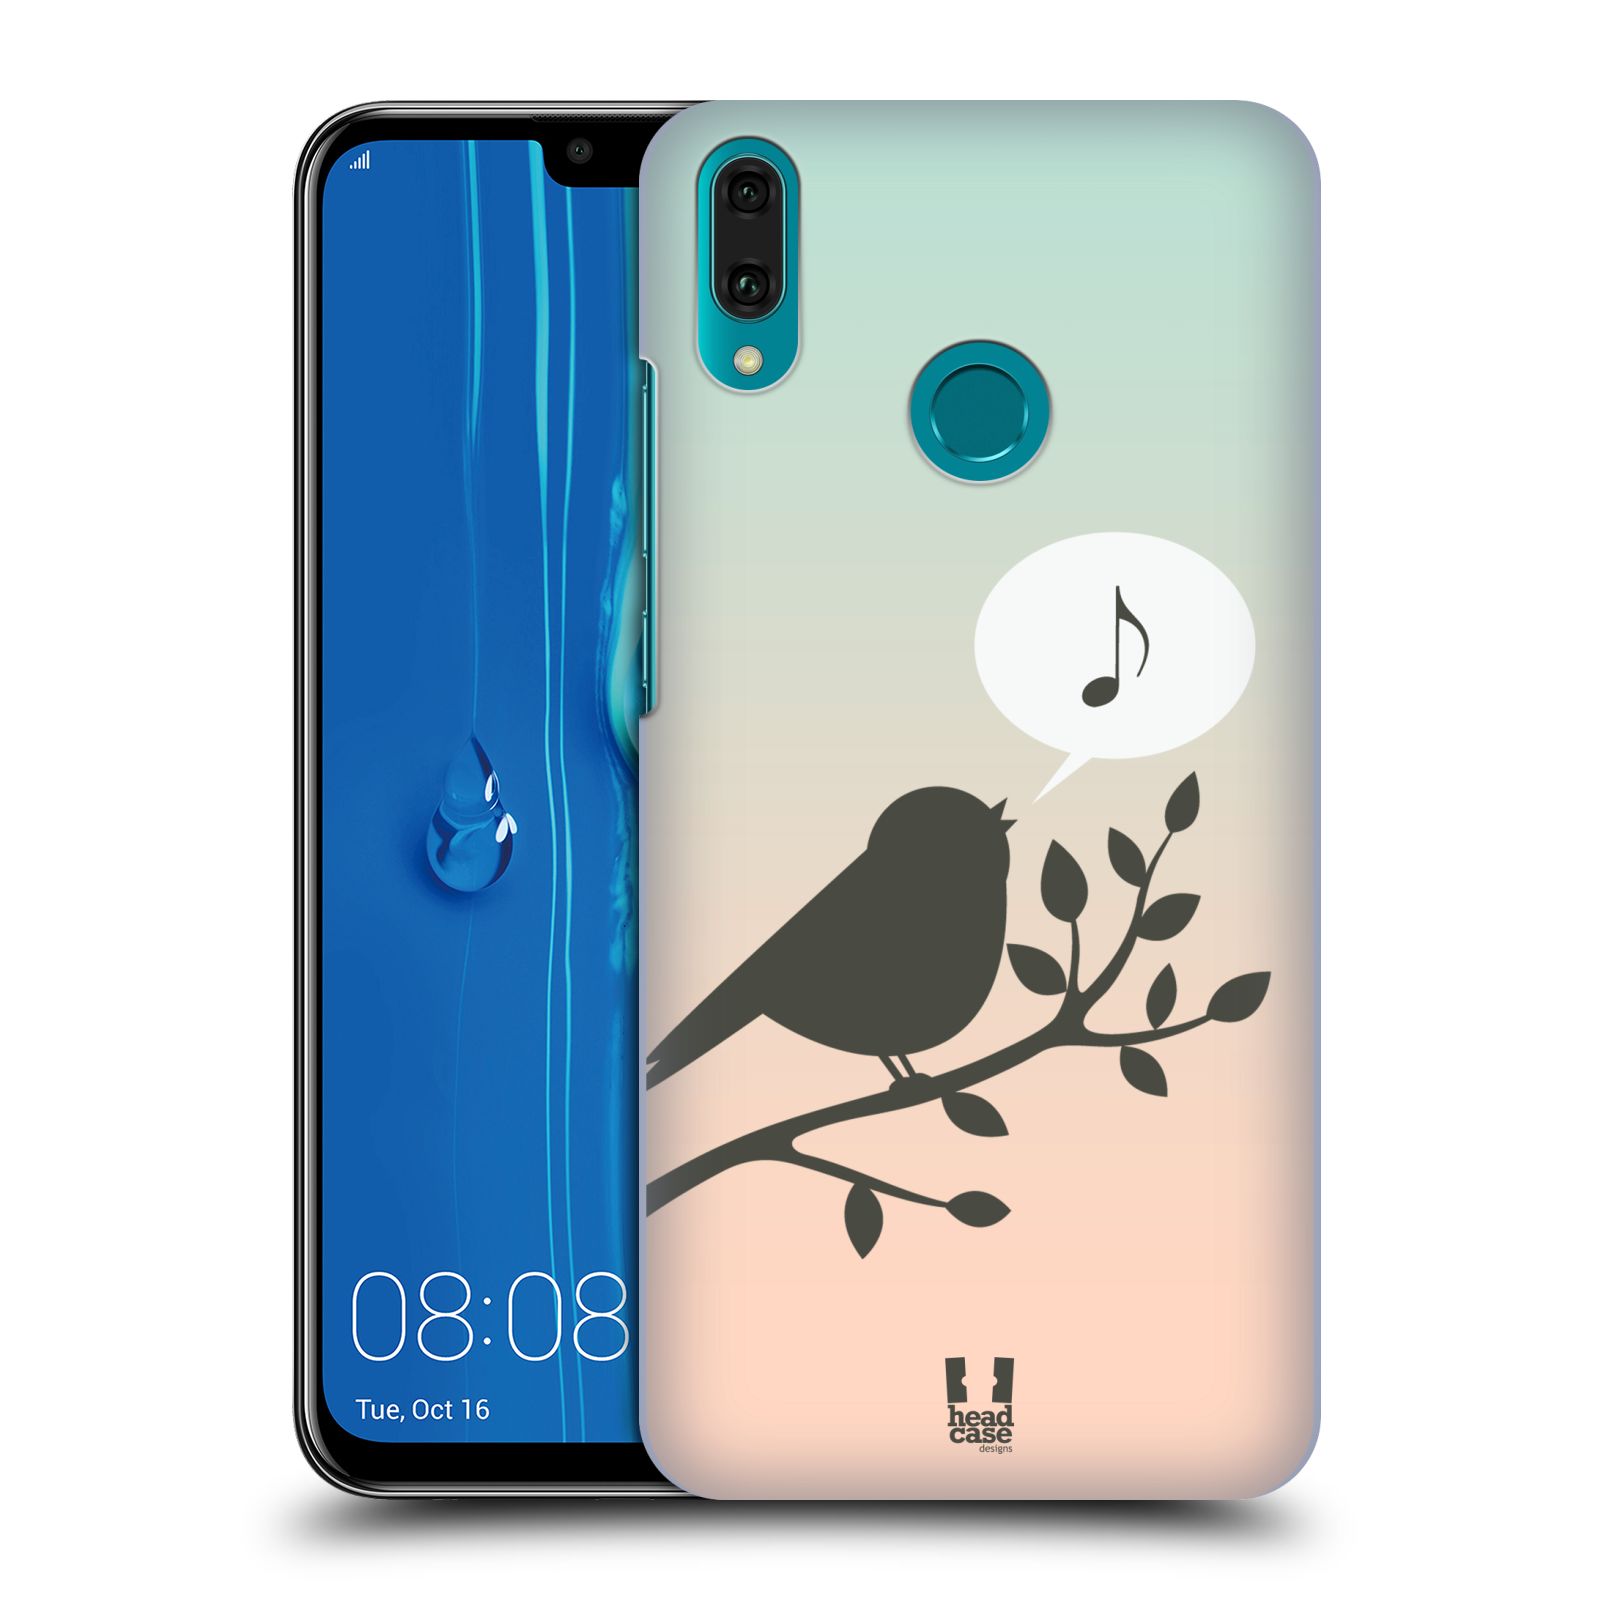 Pouzdro na mobil Huawei Y9 2019 - HEAD CASE - vzor Ptáček zpěváček noty píseň